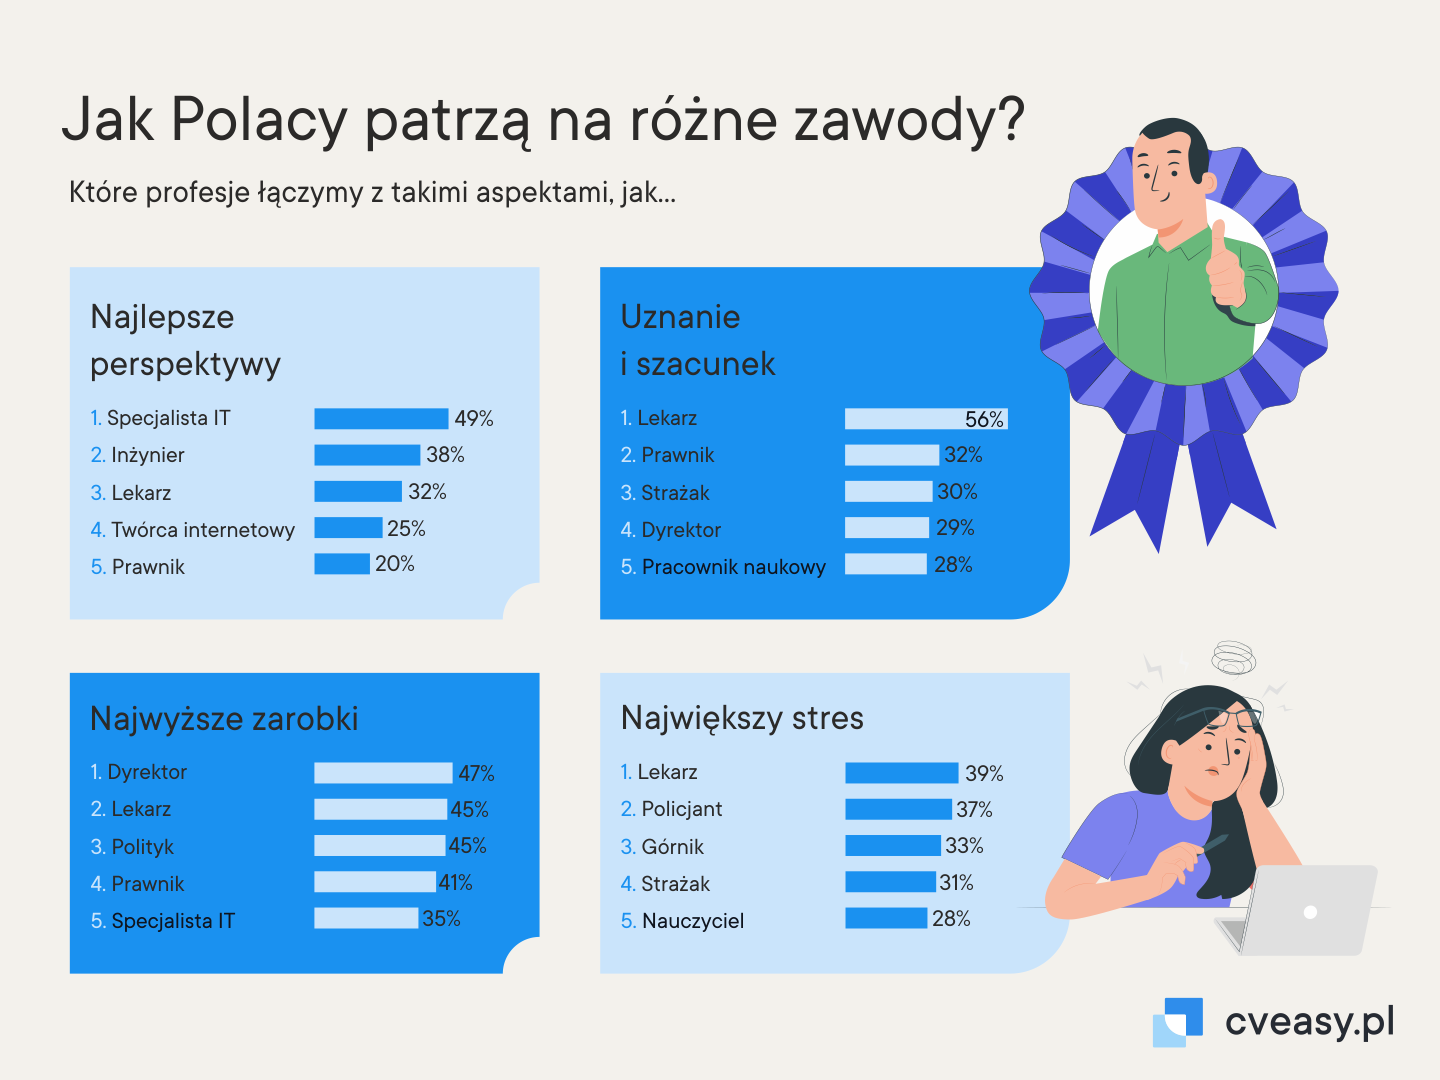 Jak Polacy patrzaa na różine zawody?